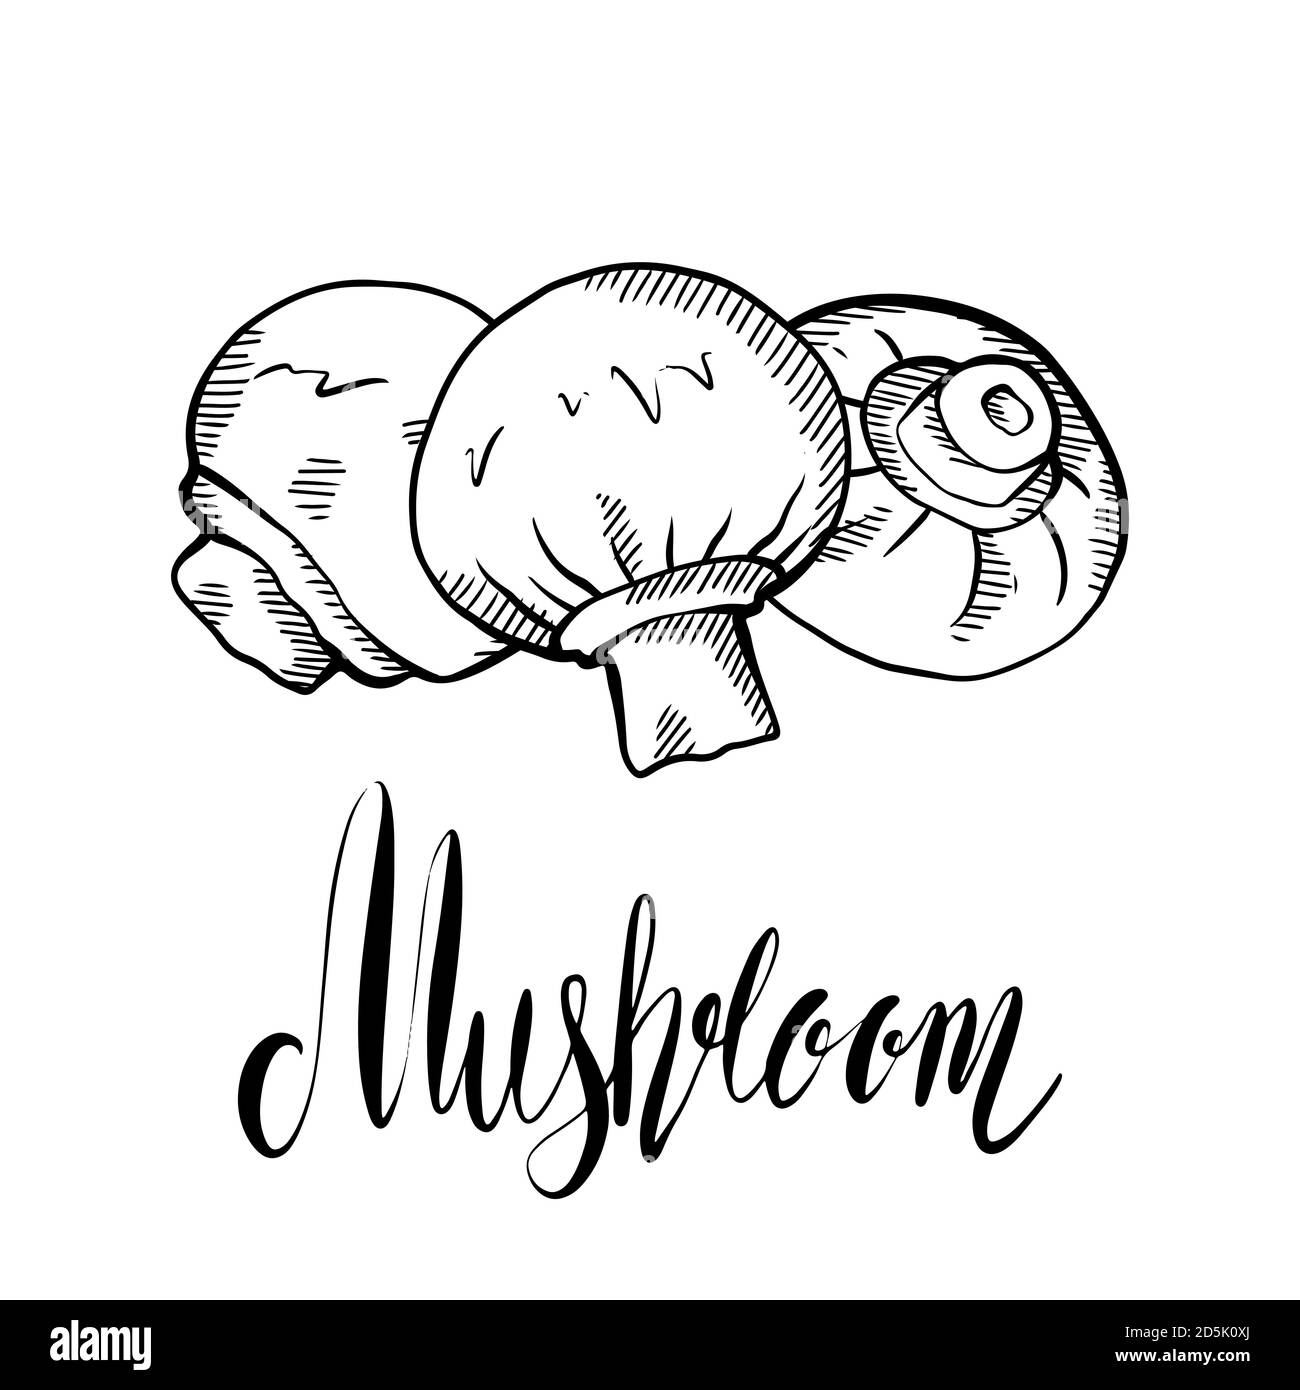 Schizzo illustrazione disegnata a mano di funghi champignon con schiusa e scritta. Cibo sano naturale e calligrafia citazione. Vettore scribble elemen Illustrazione Vettoriale